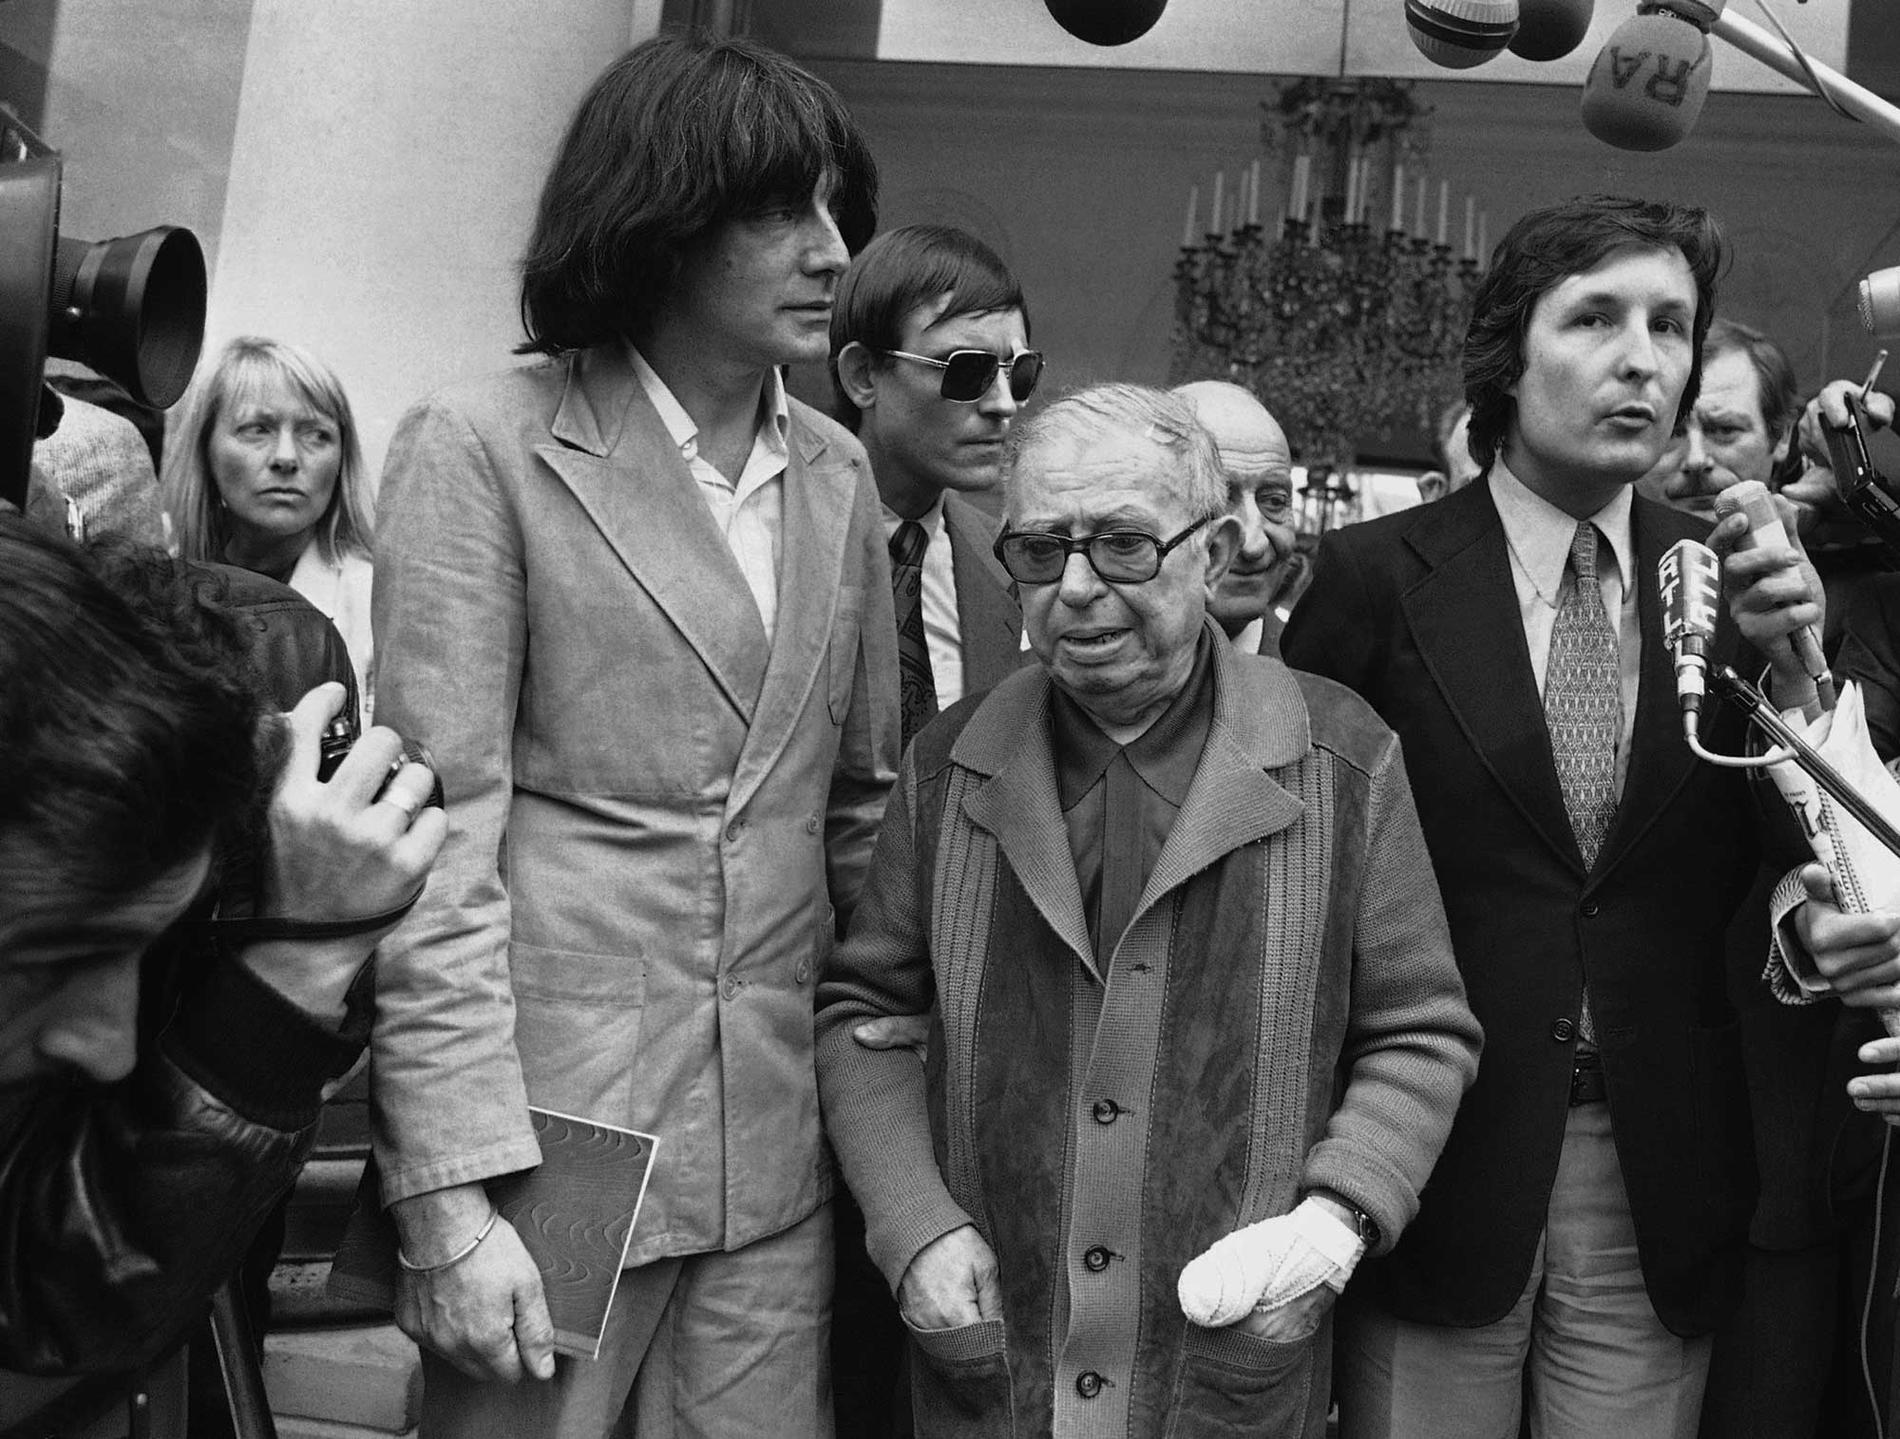 Franske filosofen och författaren Jean-Paul Sartre i mitten, här med franske filosofen och skribenten André Glucksmann (till vänster). Okänt från vilket år bilden är.